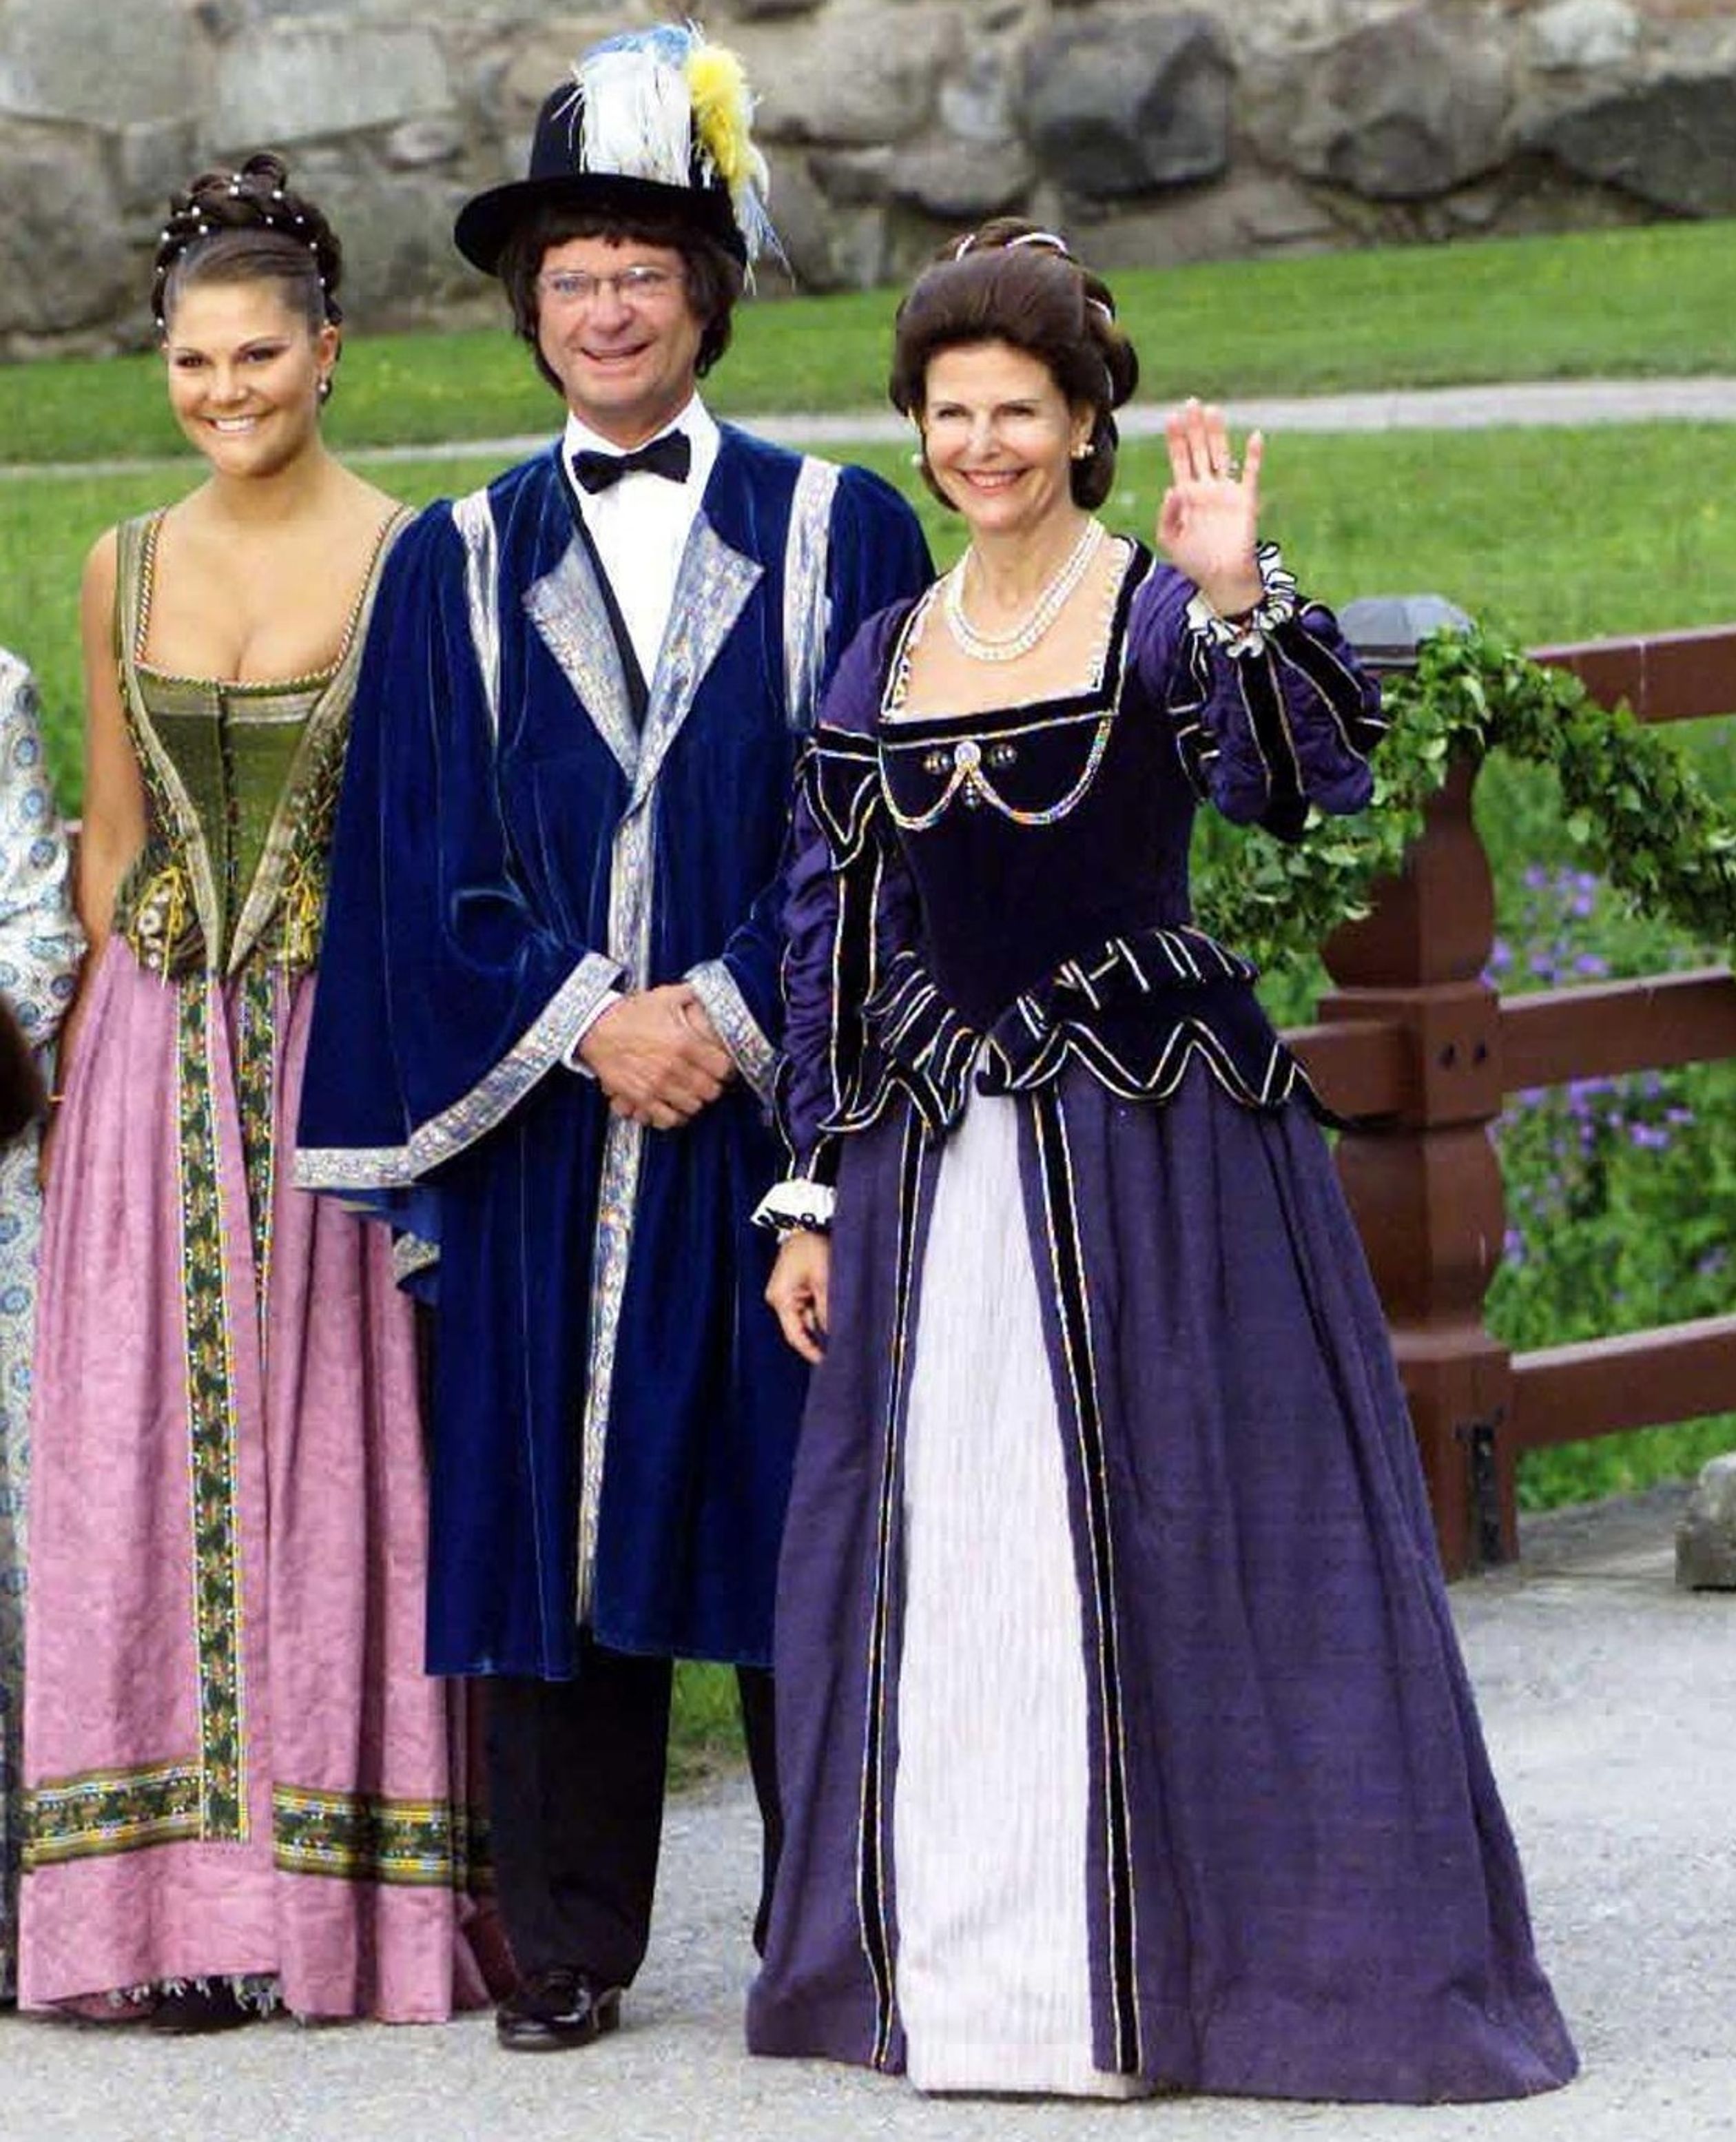 Samen met manlief en oudste dochter kroonprinses Victoria in historische kostuums. Een feestje met